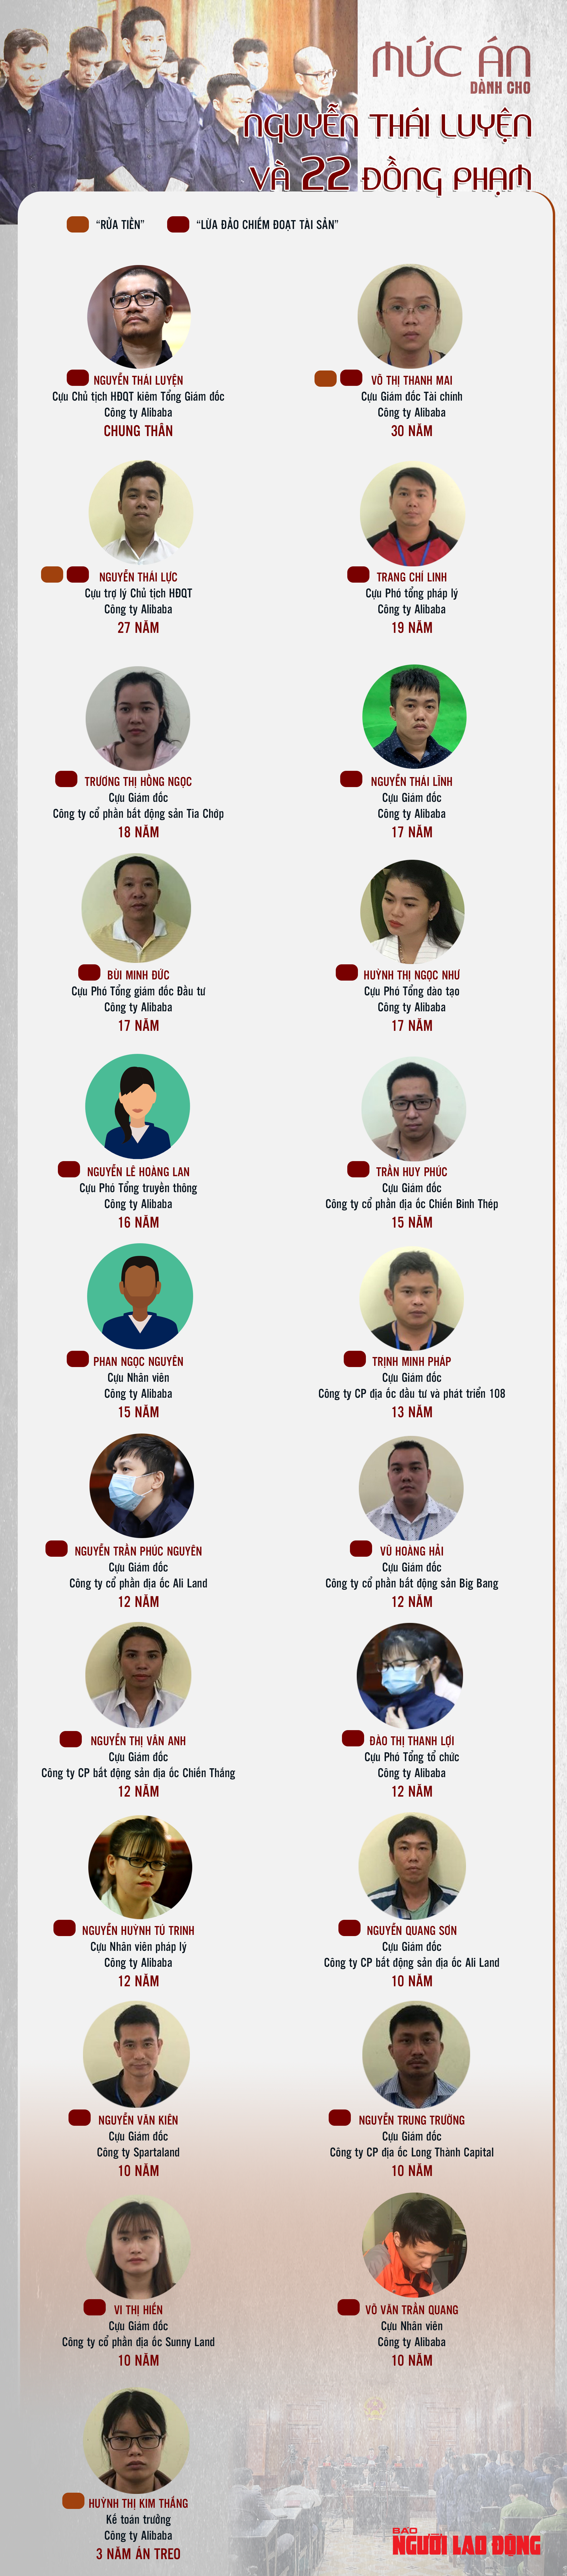 [Infographic]Chi tiết mức án dành cho Nguyễn Thái Luyện và 22 đồng phạm - Ảnh 1.